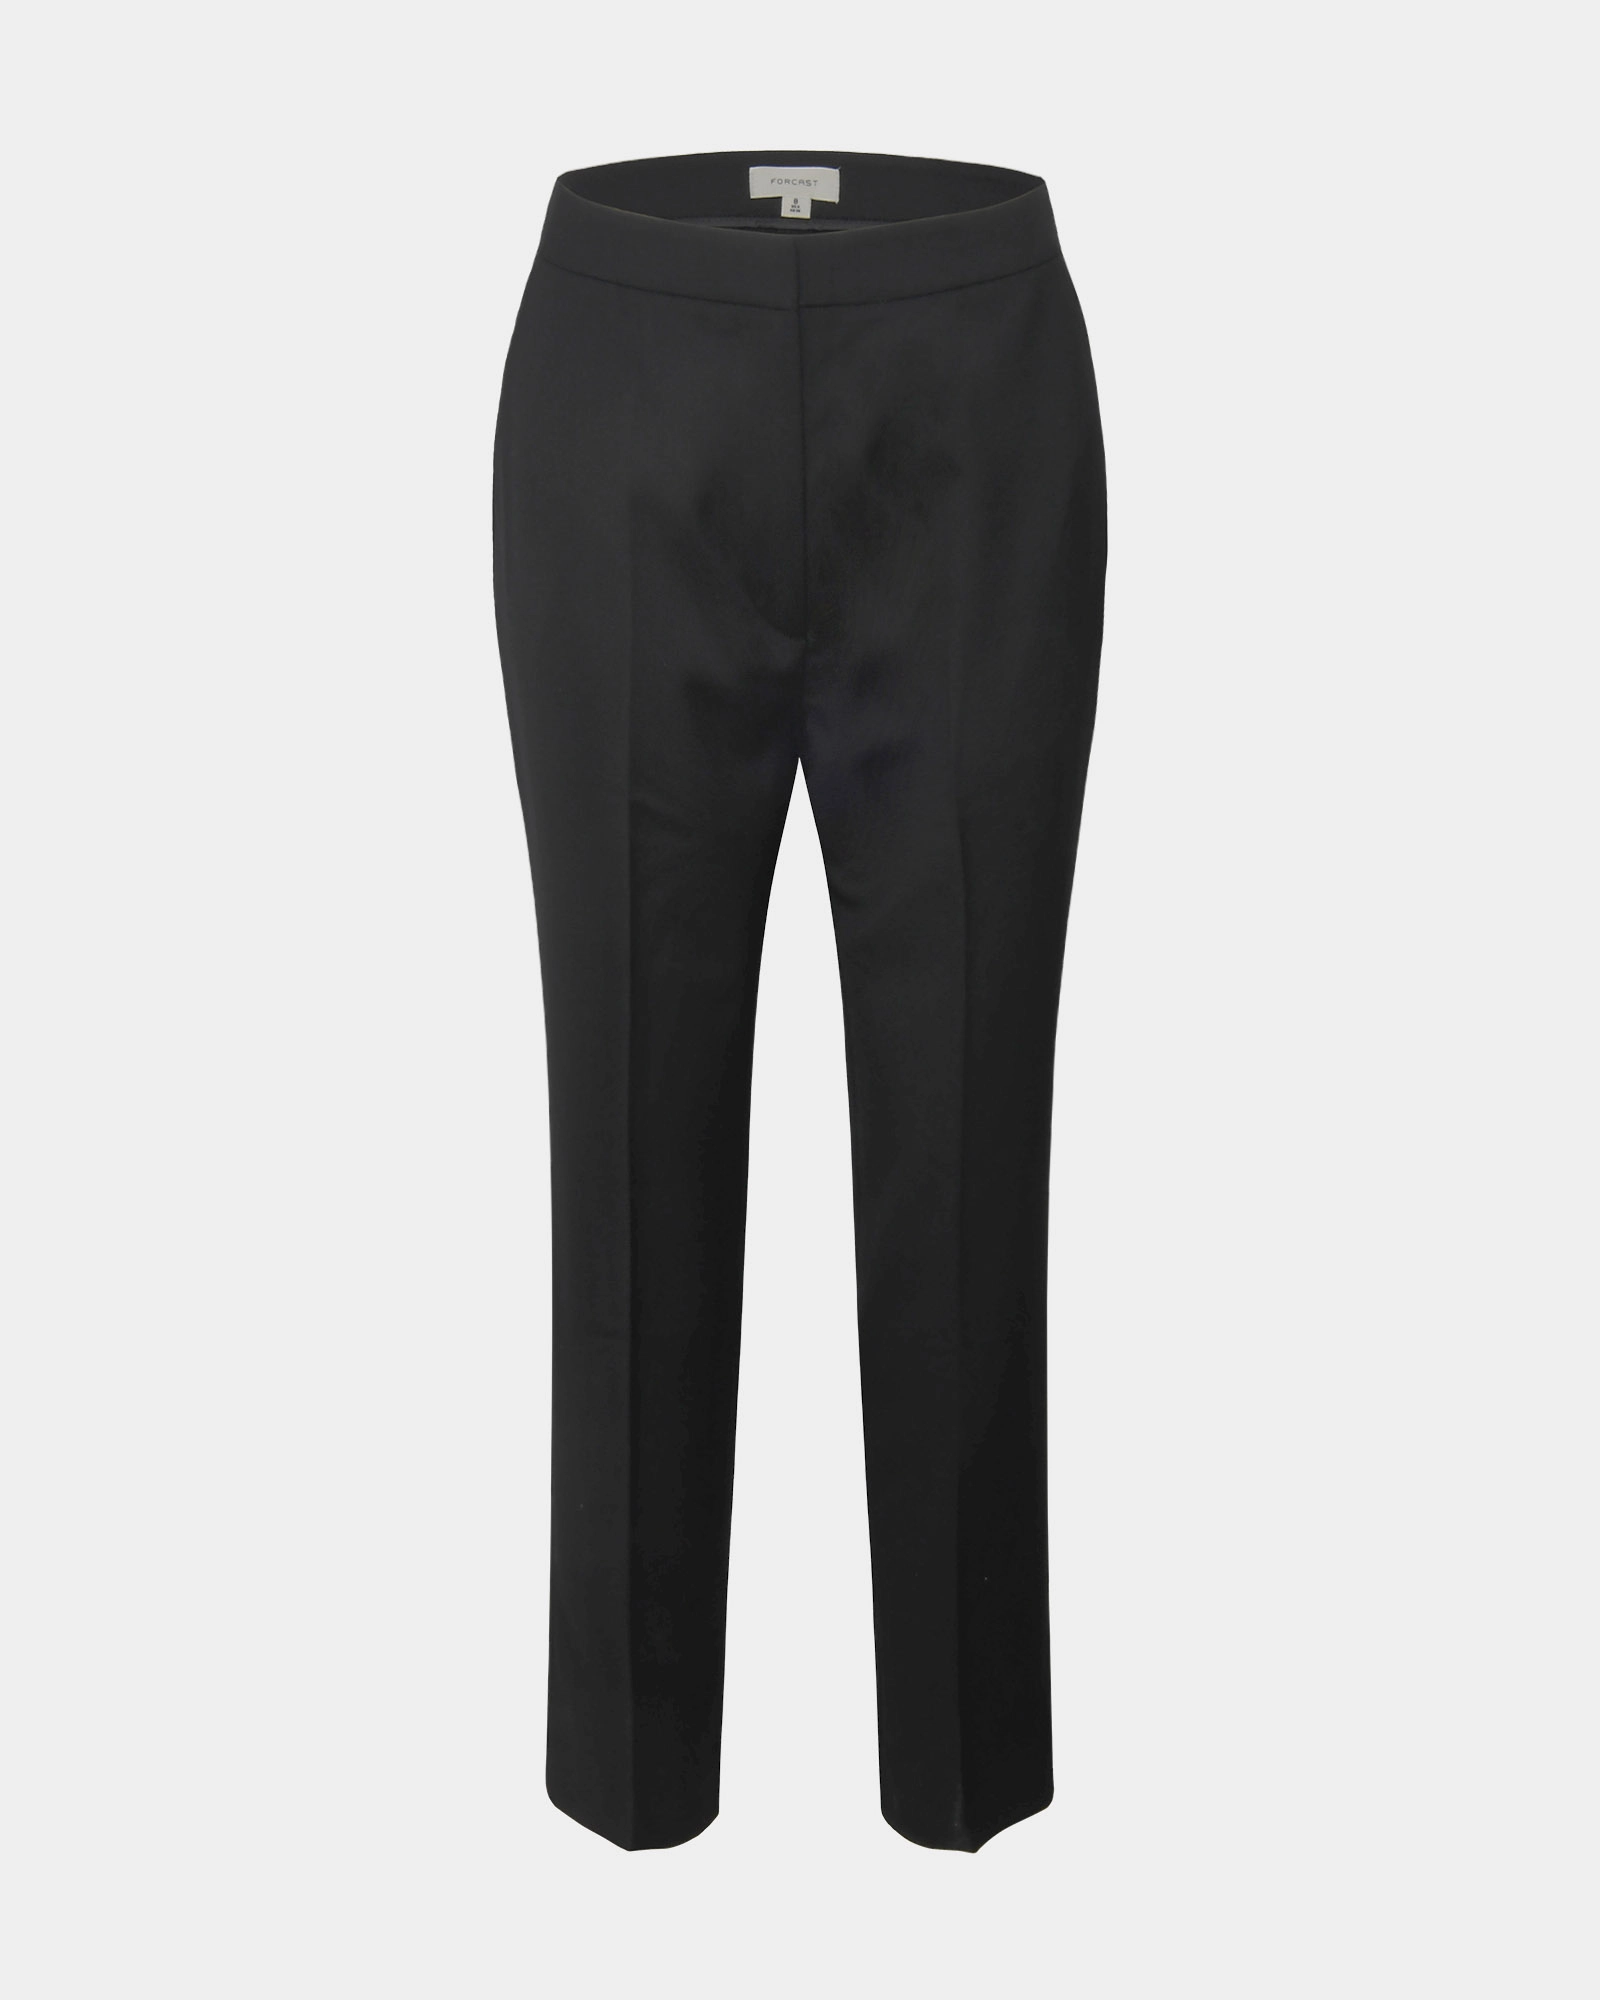 Colette Slim Pants | Black | Forcast - Forcast AU